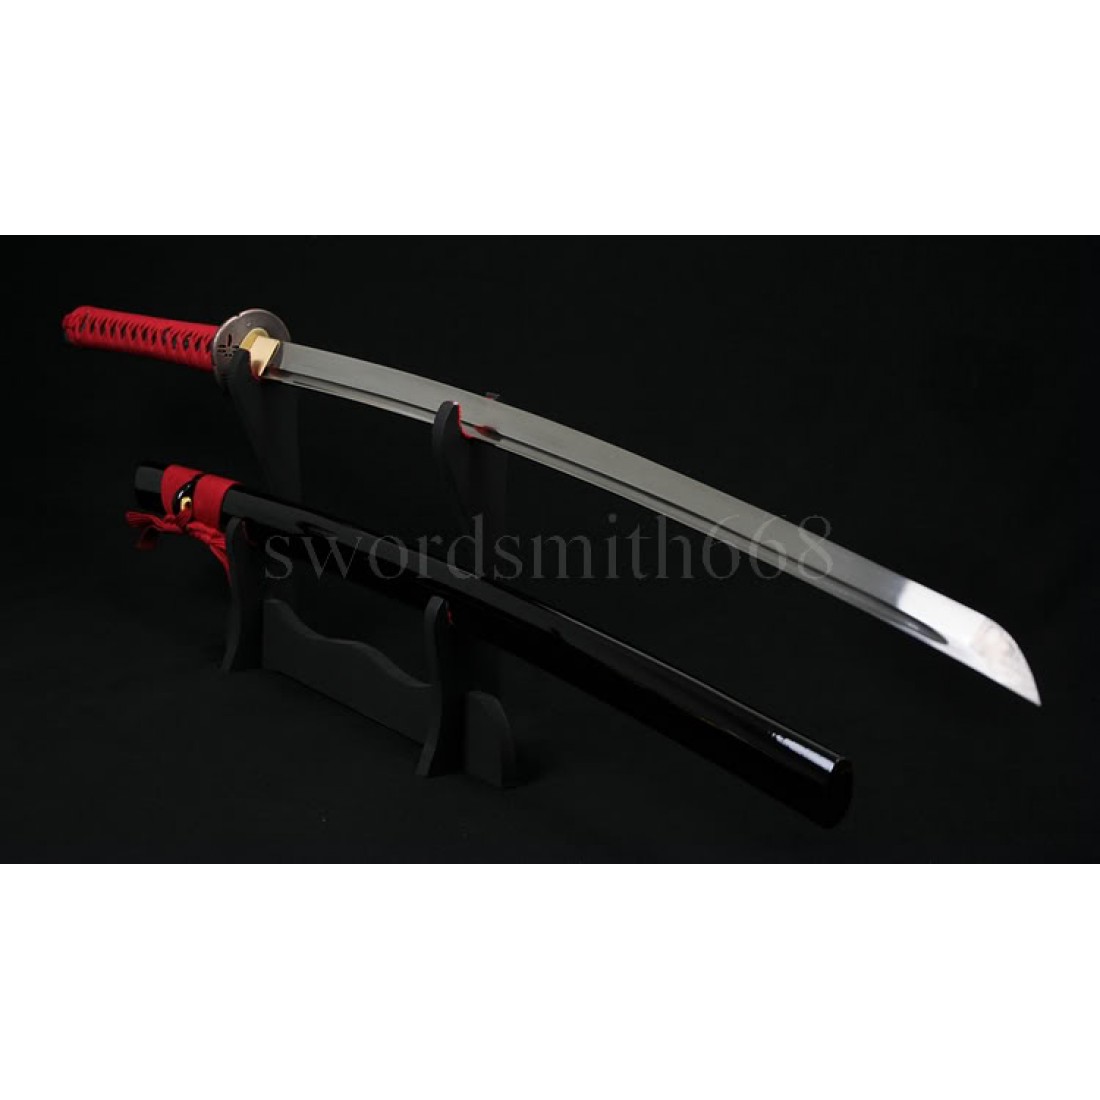 Самый дорогой меч катана в Японии